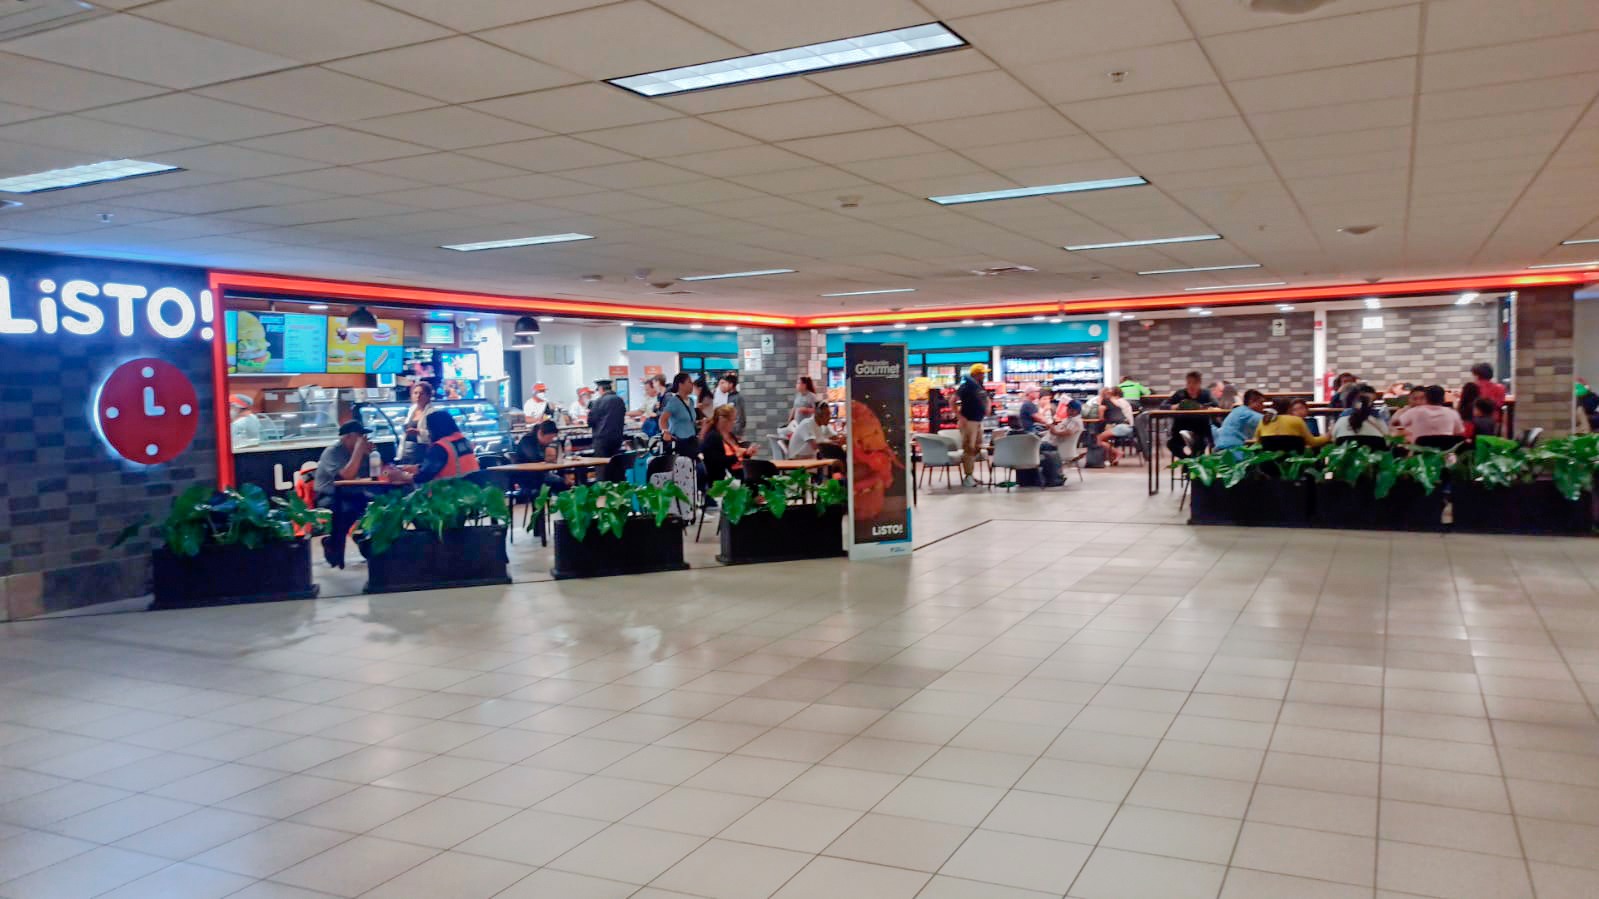 LiSTO! renueva su tienda ubicada en el aeropuerto de Lima y duplica su aforo de atención